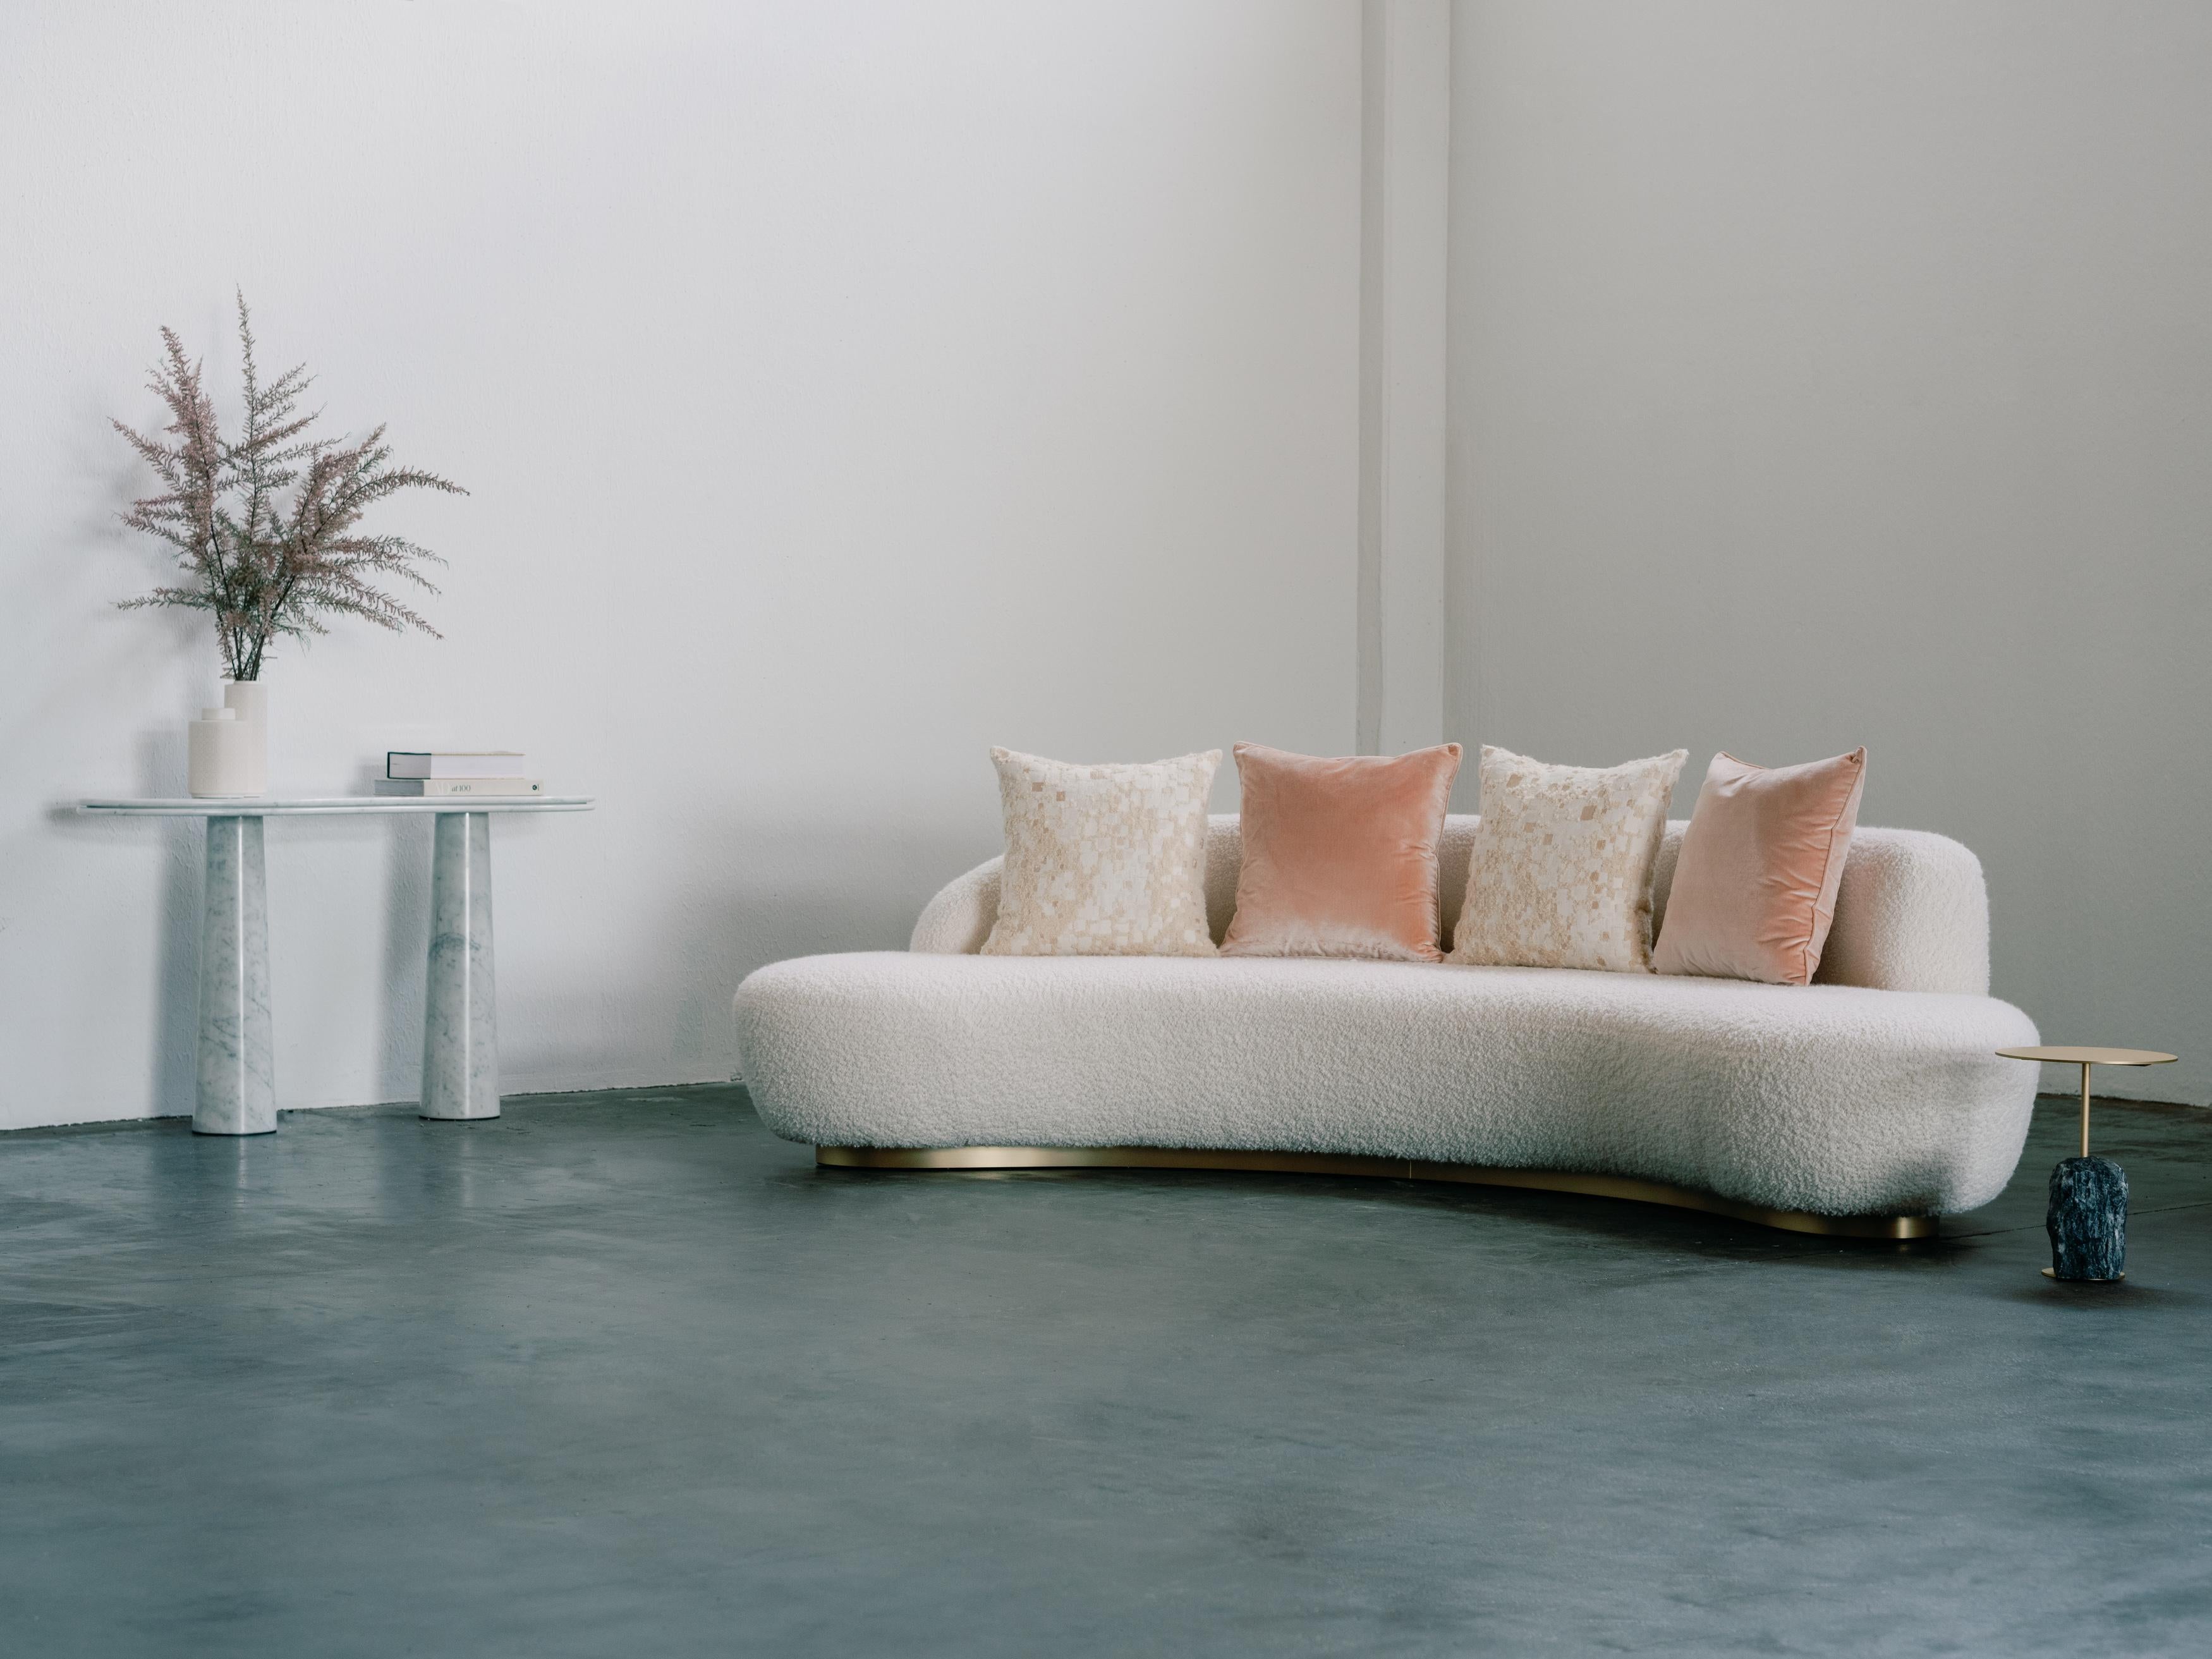 Arc Sofa, zeitgenössische Kollektion, handgefertigt in Portugal - Europa von Greenapple.

Ein meisterhaft verarbeitetes Sofa, dessen robuste Holzstruktur und hochwertiger Memory-Schaum auch bei häufigem Gebrauch seine Form beibehält. Arc ist mit